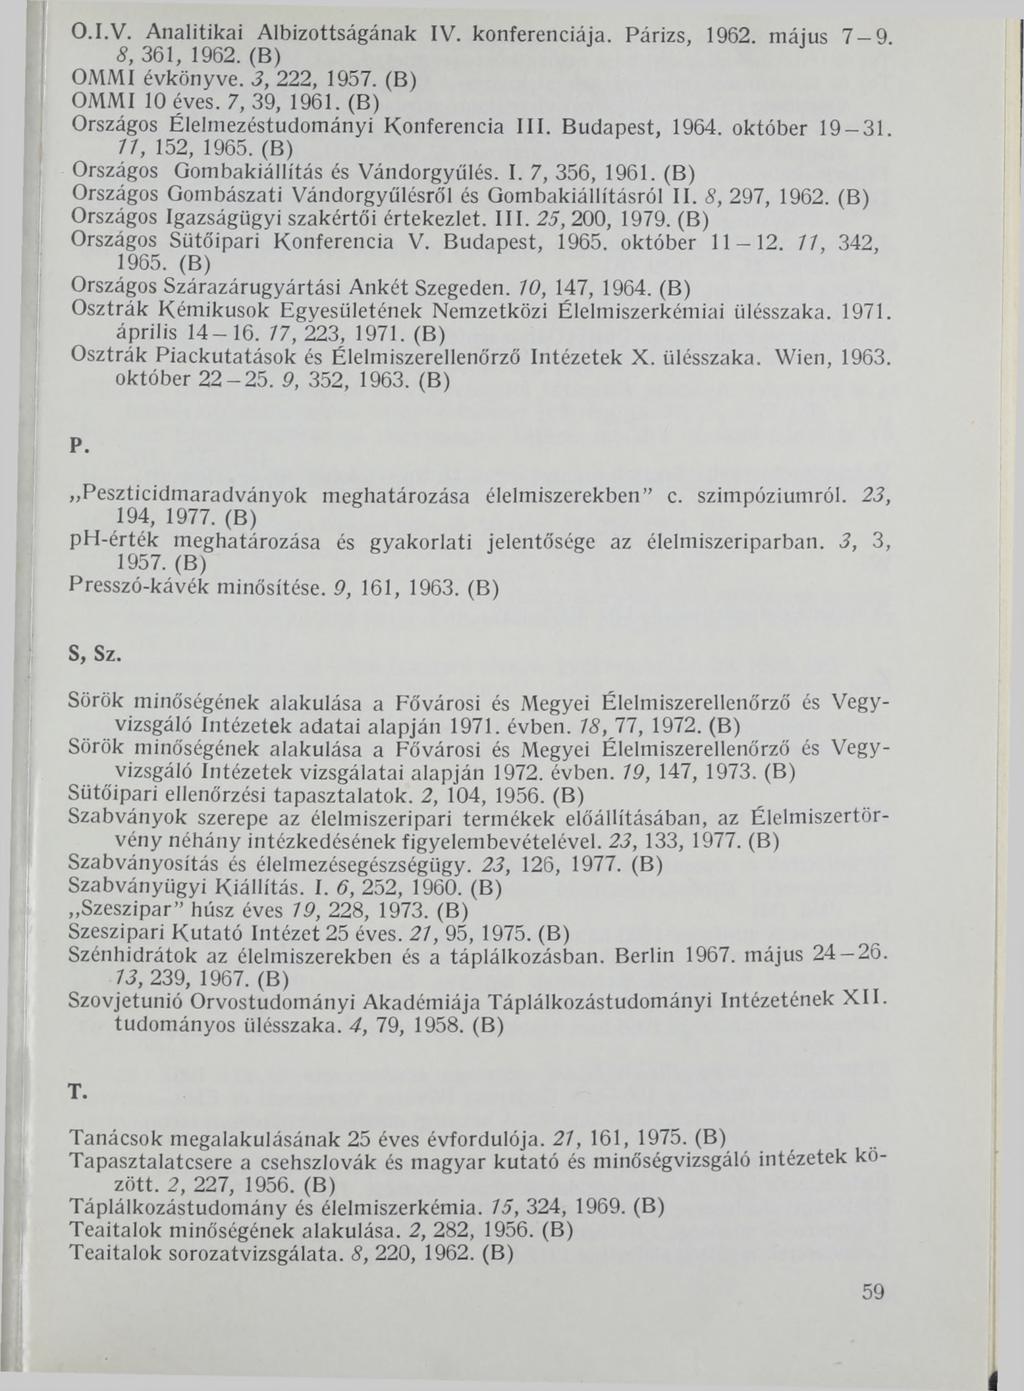 O.I.V. Analitikai Albizottságának IV. konferenciája. Párizs, 1962. május 7-9. 8, 361, 1962. (B) OMMI évkönyve. 3, 222, 1957. (B) OMMI 10 éves. 7, 39, 1961.